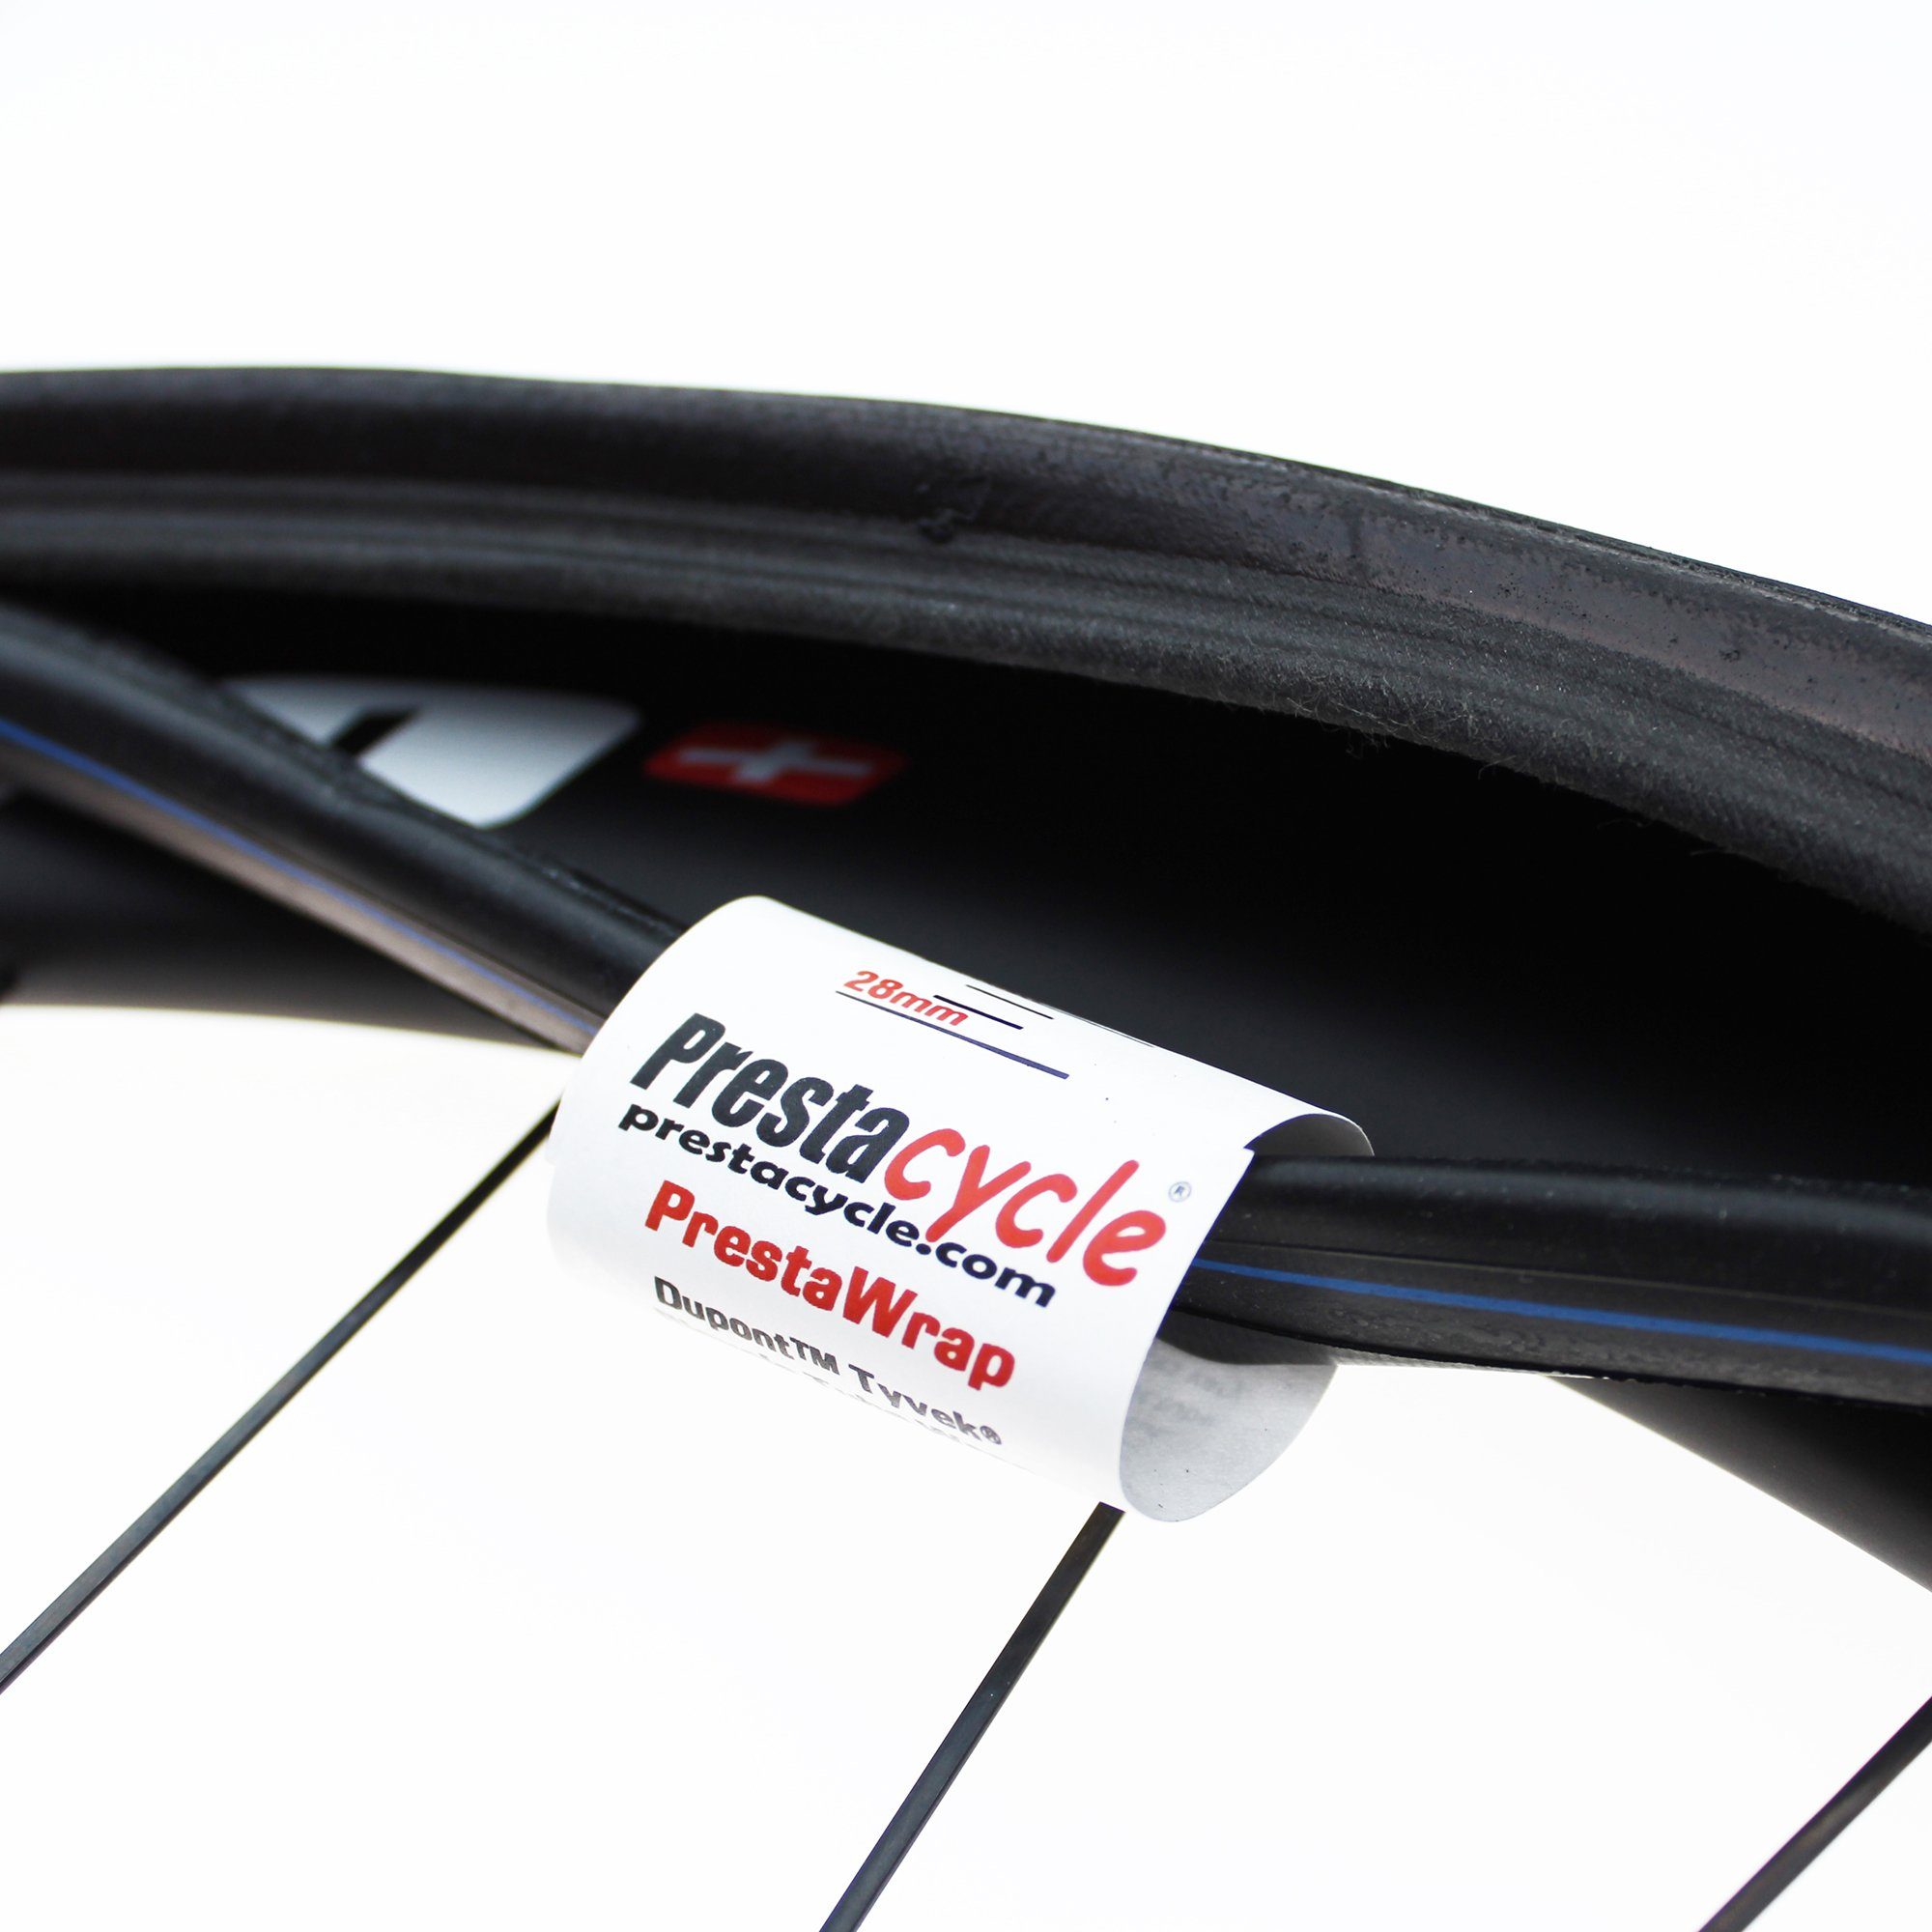 Prestacycle Fahrradwerkzeugset Prestacycle PrestaWrap Tube am Reifen, verhindert Manschette (4-St), Reparatur Unwucht von Gewicht Wrap gerissenen die Klebstoff-Zylinder Reifen oder - eine für Unebenheit und durch leichtes